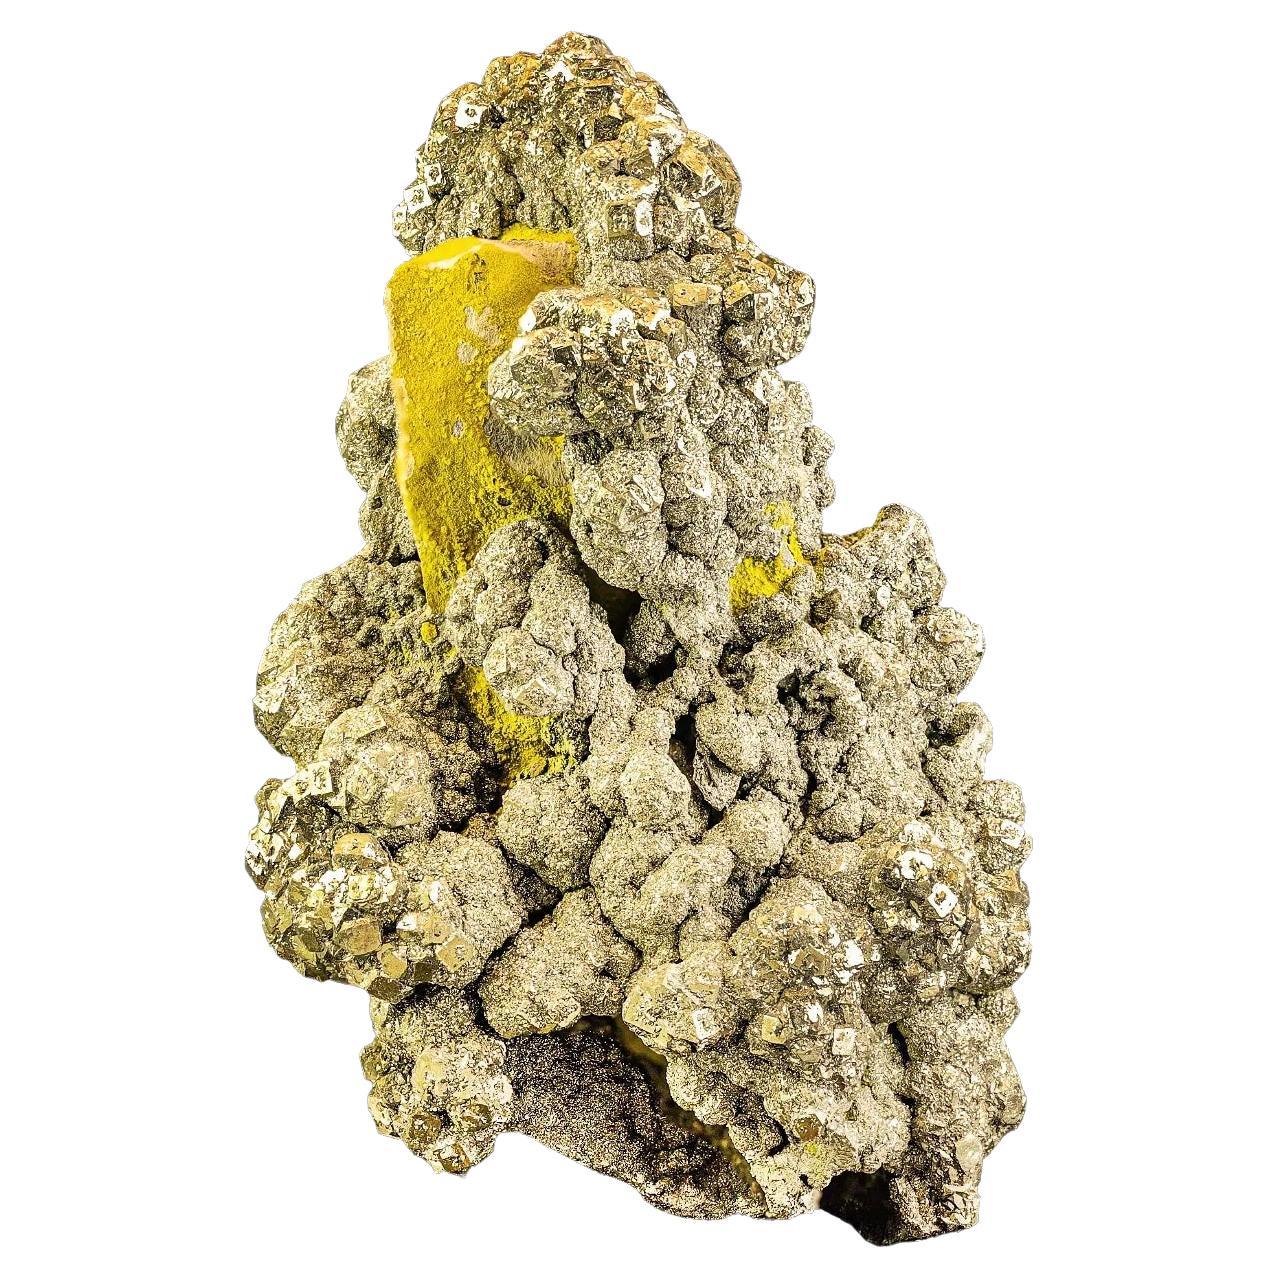 Riches cristaux pyrite de couleur dorée uniques sur matrice de limonite d'Afghanistan en vente